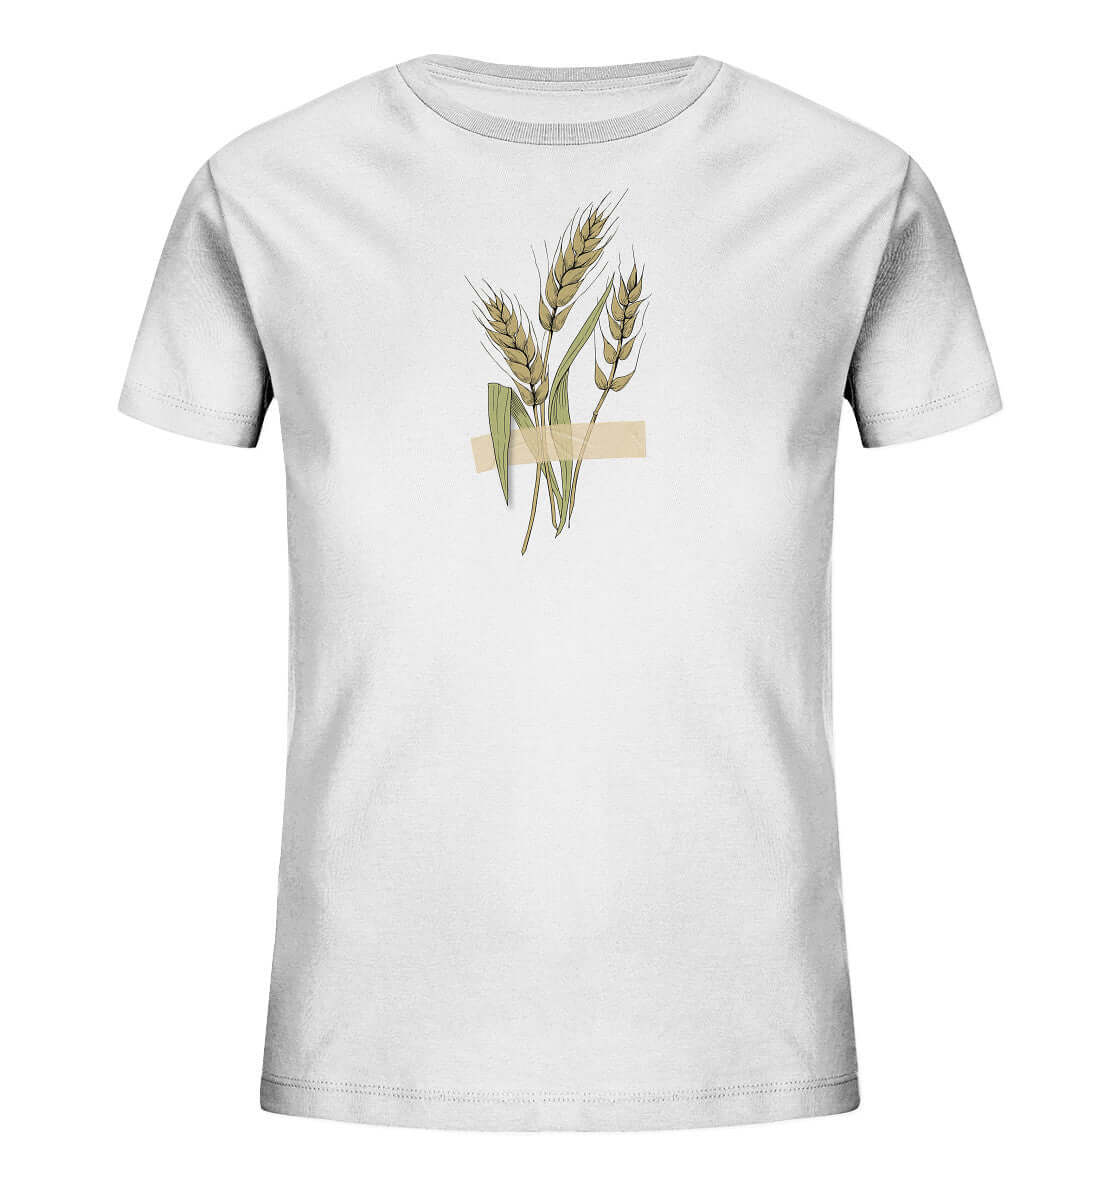 Kinder Shirt Ähre festgeklebt Agrar Acker Weizen Landwirt Shirt Landwirtschaft Dorfkind Dorfkram®